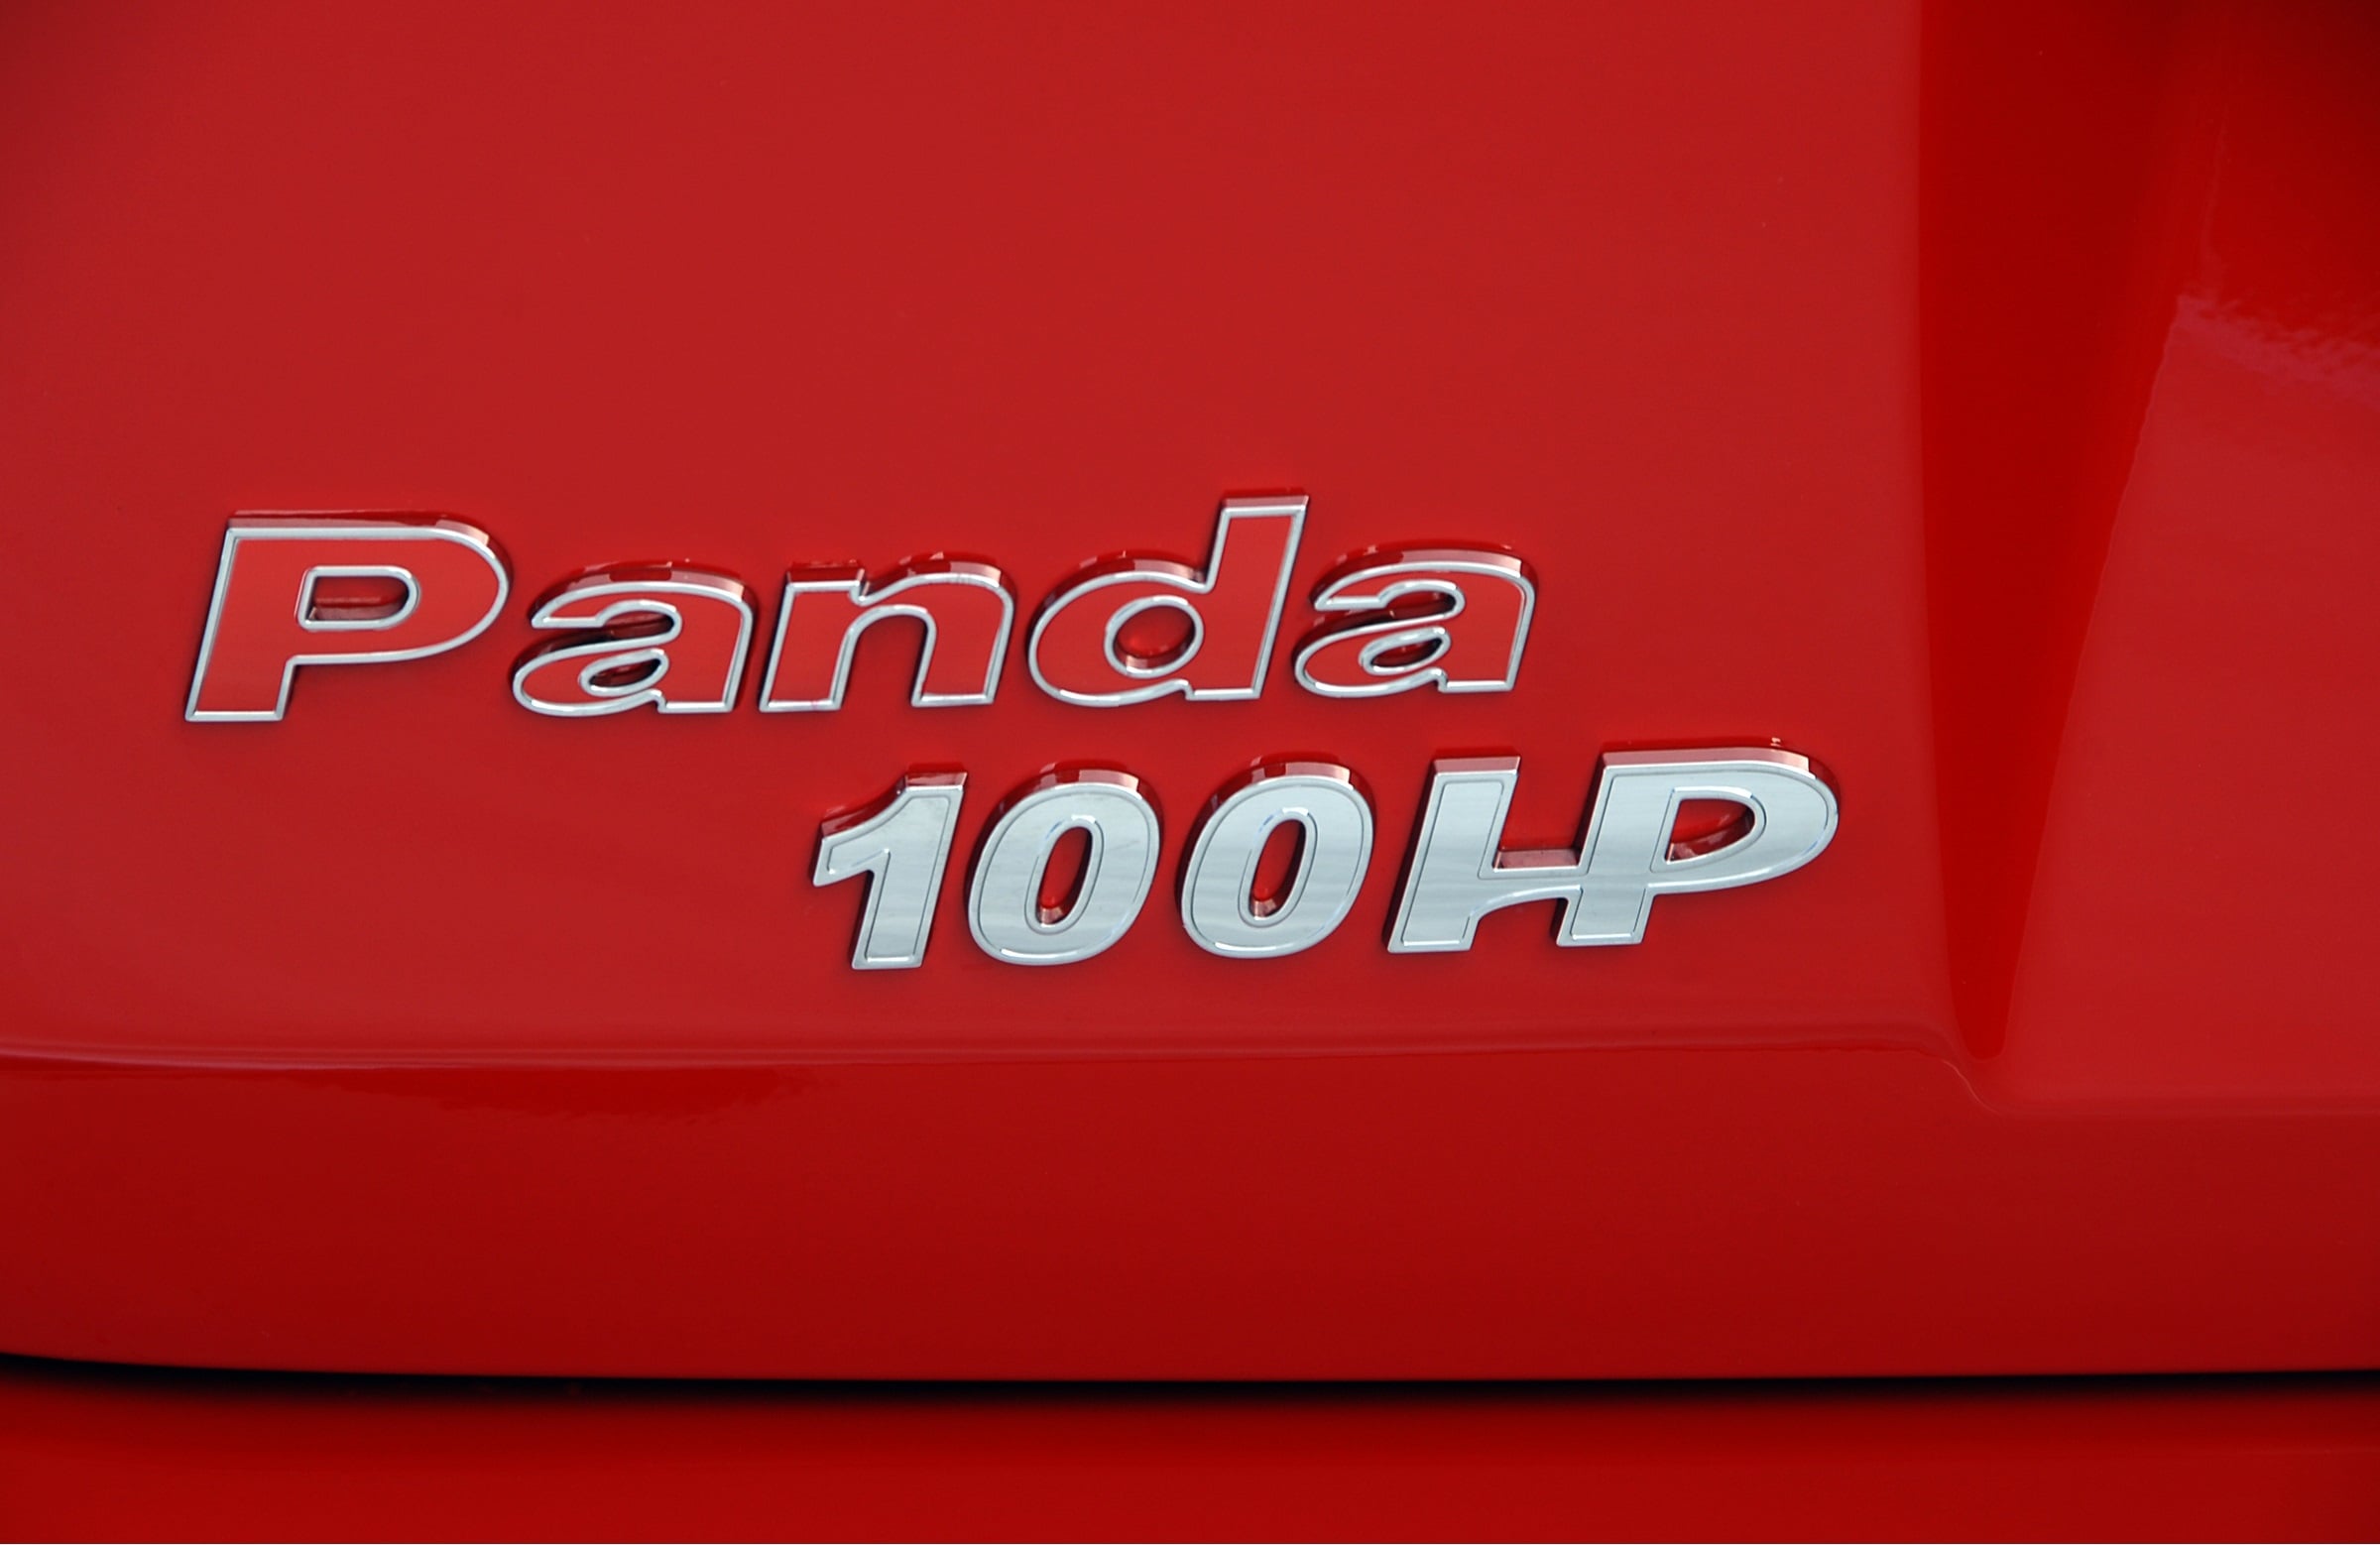 Fiat Panda 100hp, fiat panda, fiat, panda, 100hp, italy, italian car, cars, motoring, automotive, classic car, retro car, hot hatch, fix it again tony, fun car, exciting car, autotrader, fiat sales,